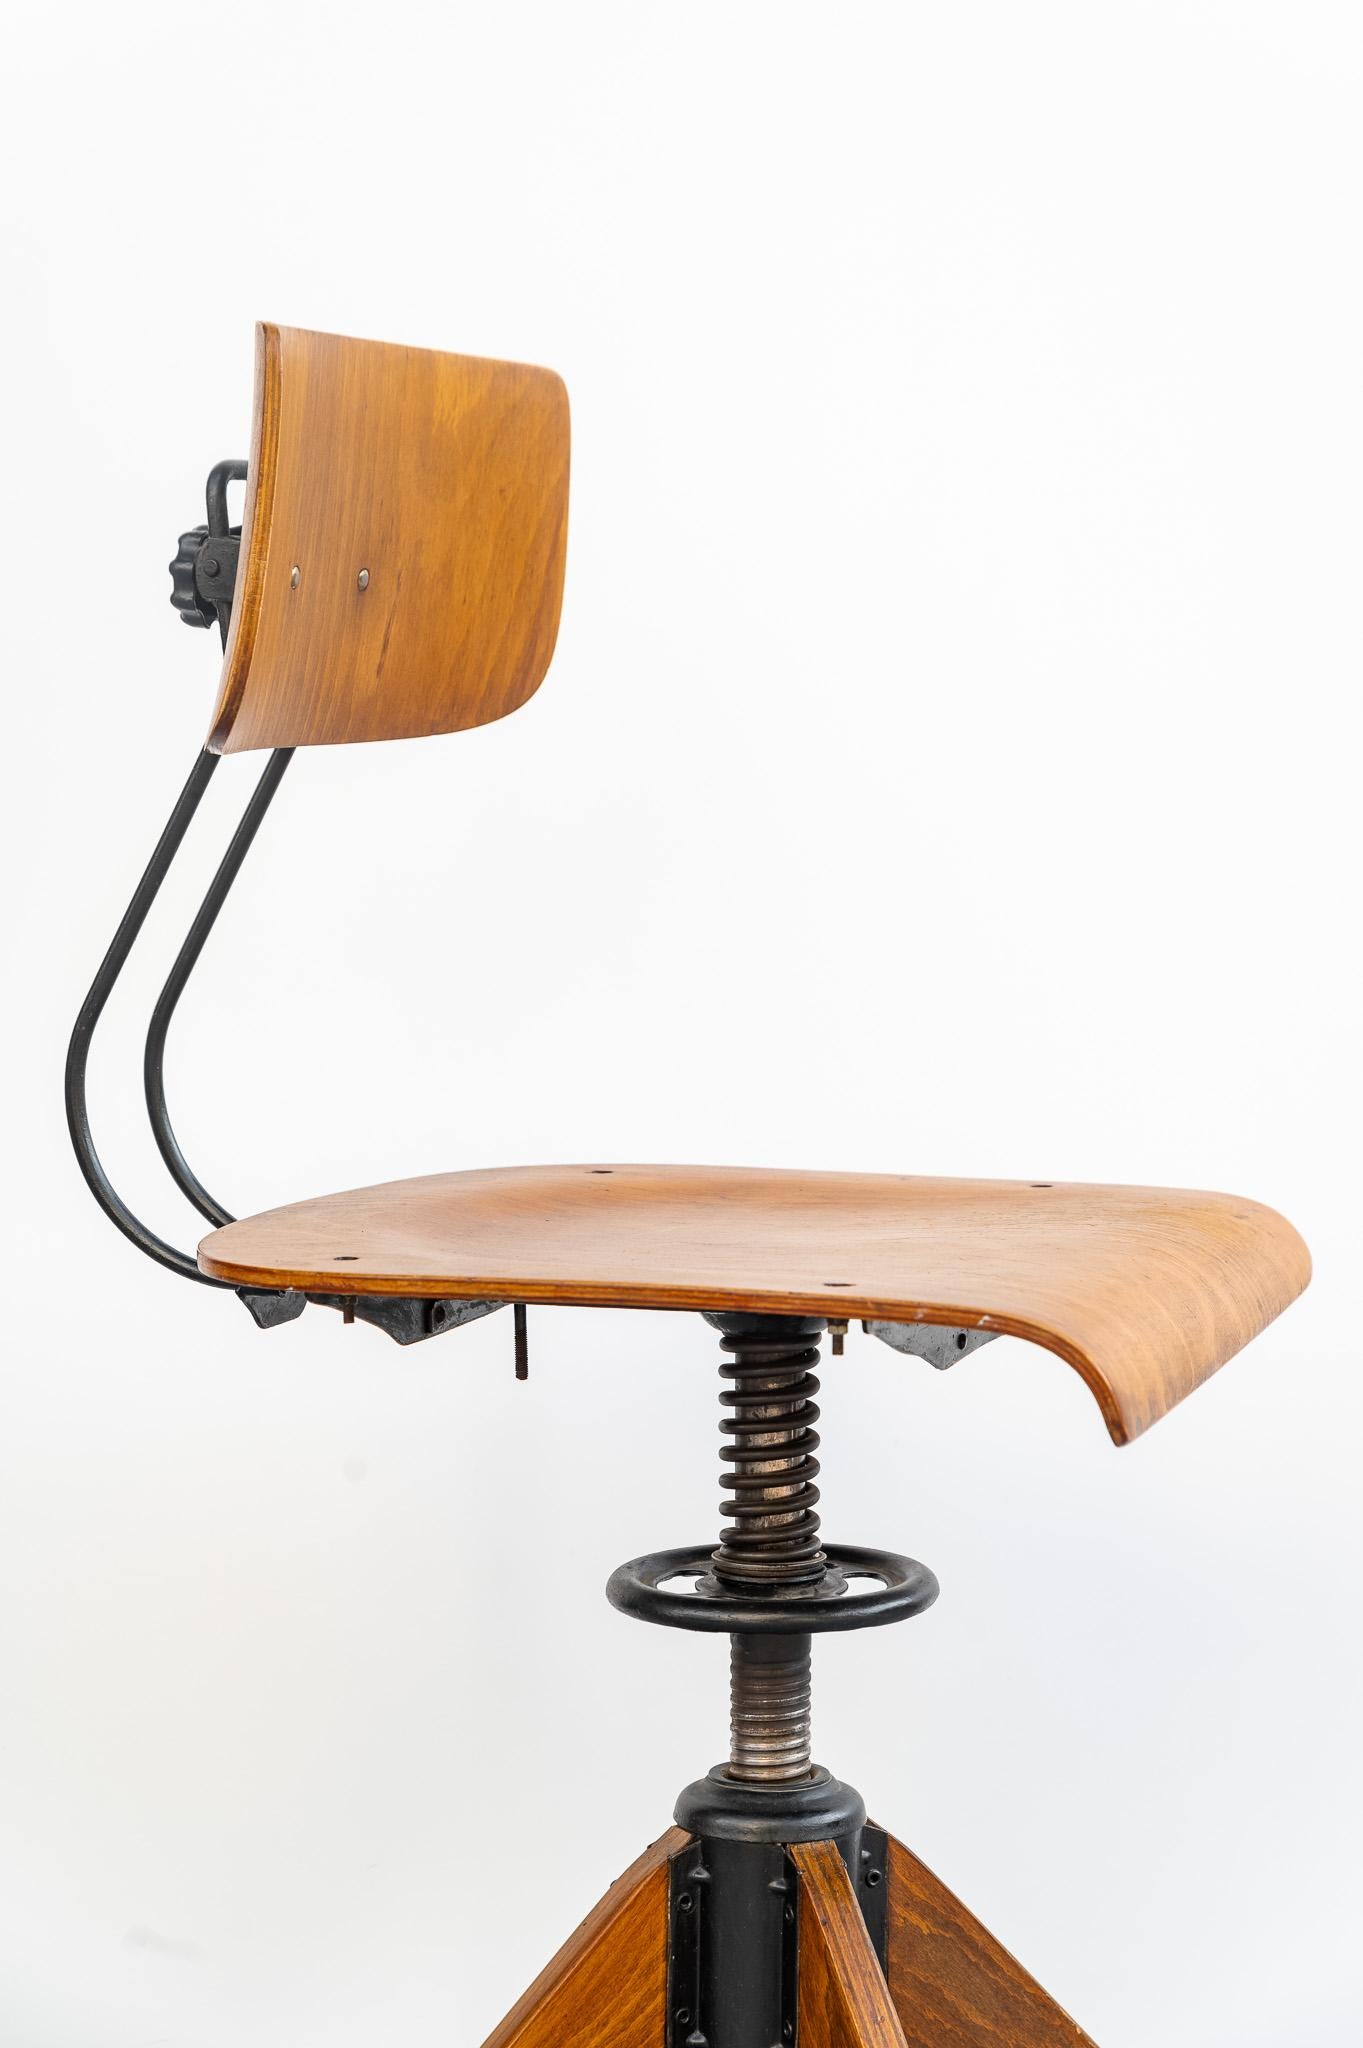 Rowac Schreibtisch-Drehstuhl von Robert Wagner, 1920er Jahre. 
Seltener Industriestuhl mit industrieller Patina. Er wurde in den 1920er Jahren in Deutschland nach einem Entwurf von Robert Wagner, Rowac, hergestellt. Der Stuhl ist dank der Position